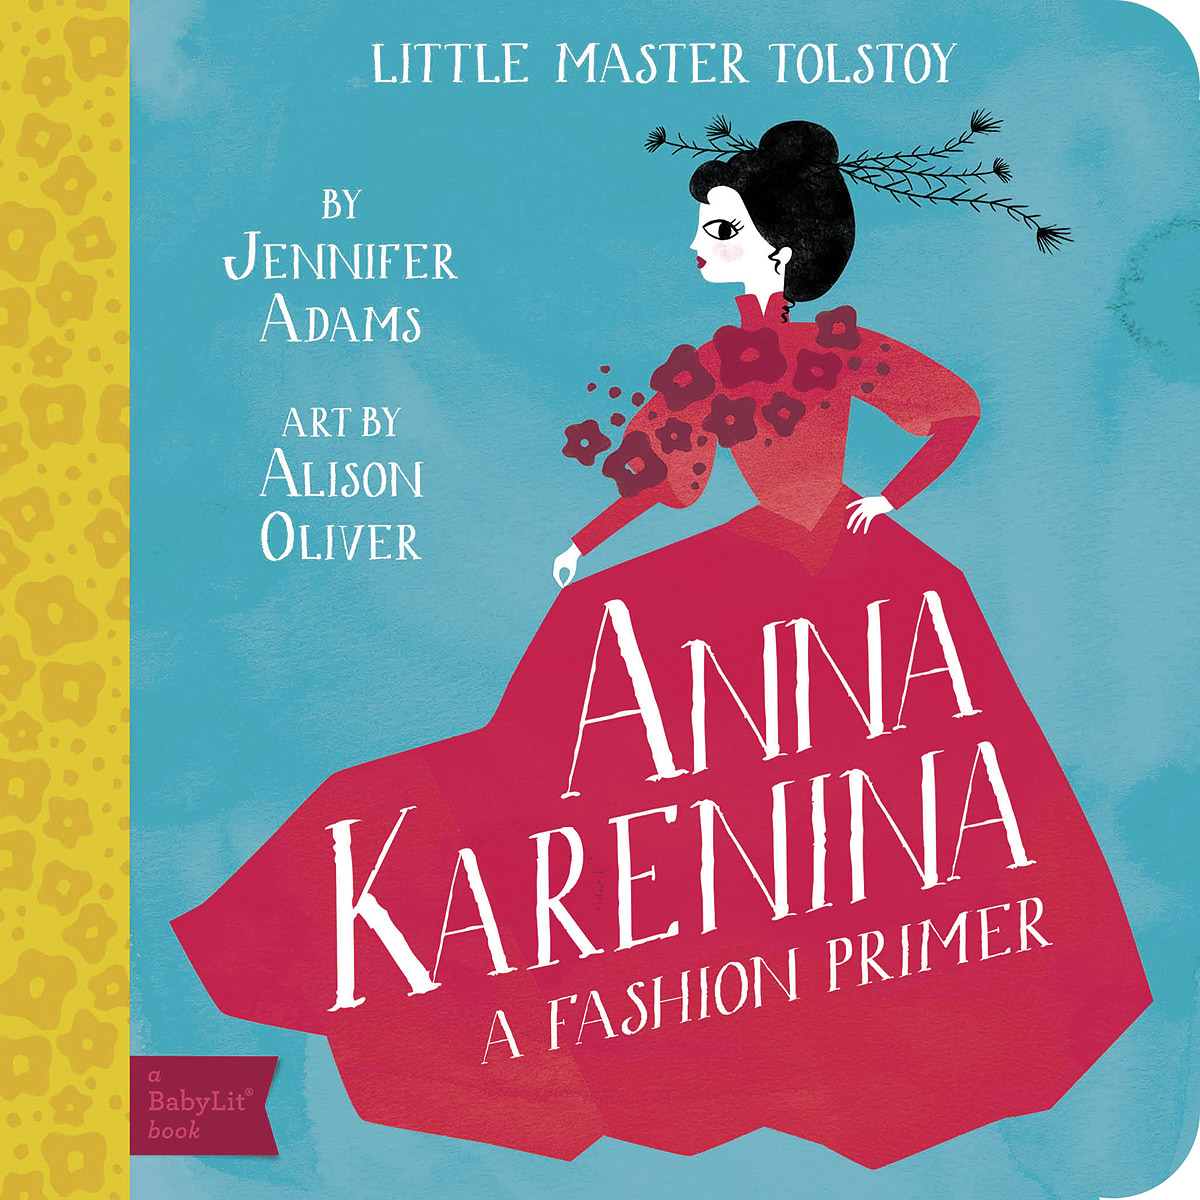 Little Master Tolstoy: Anna Karenina